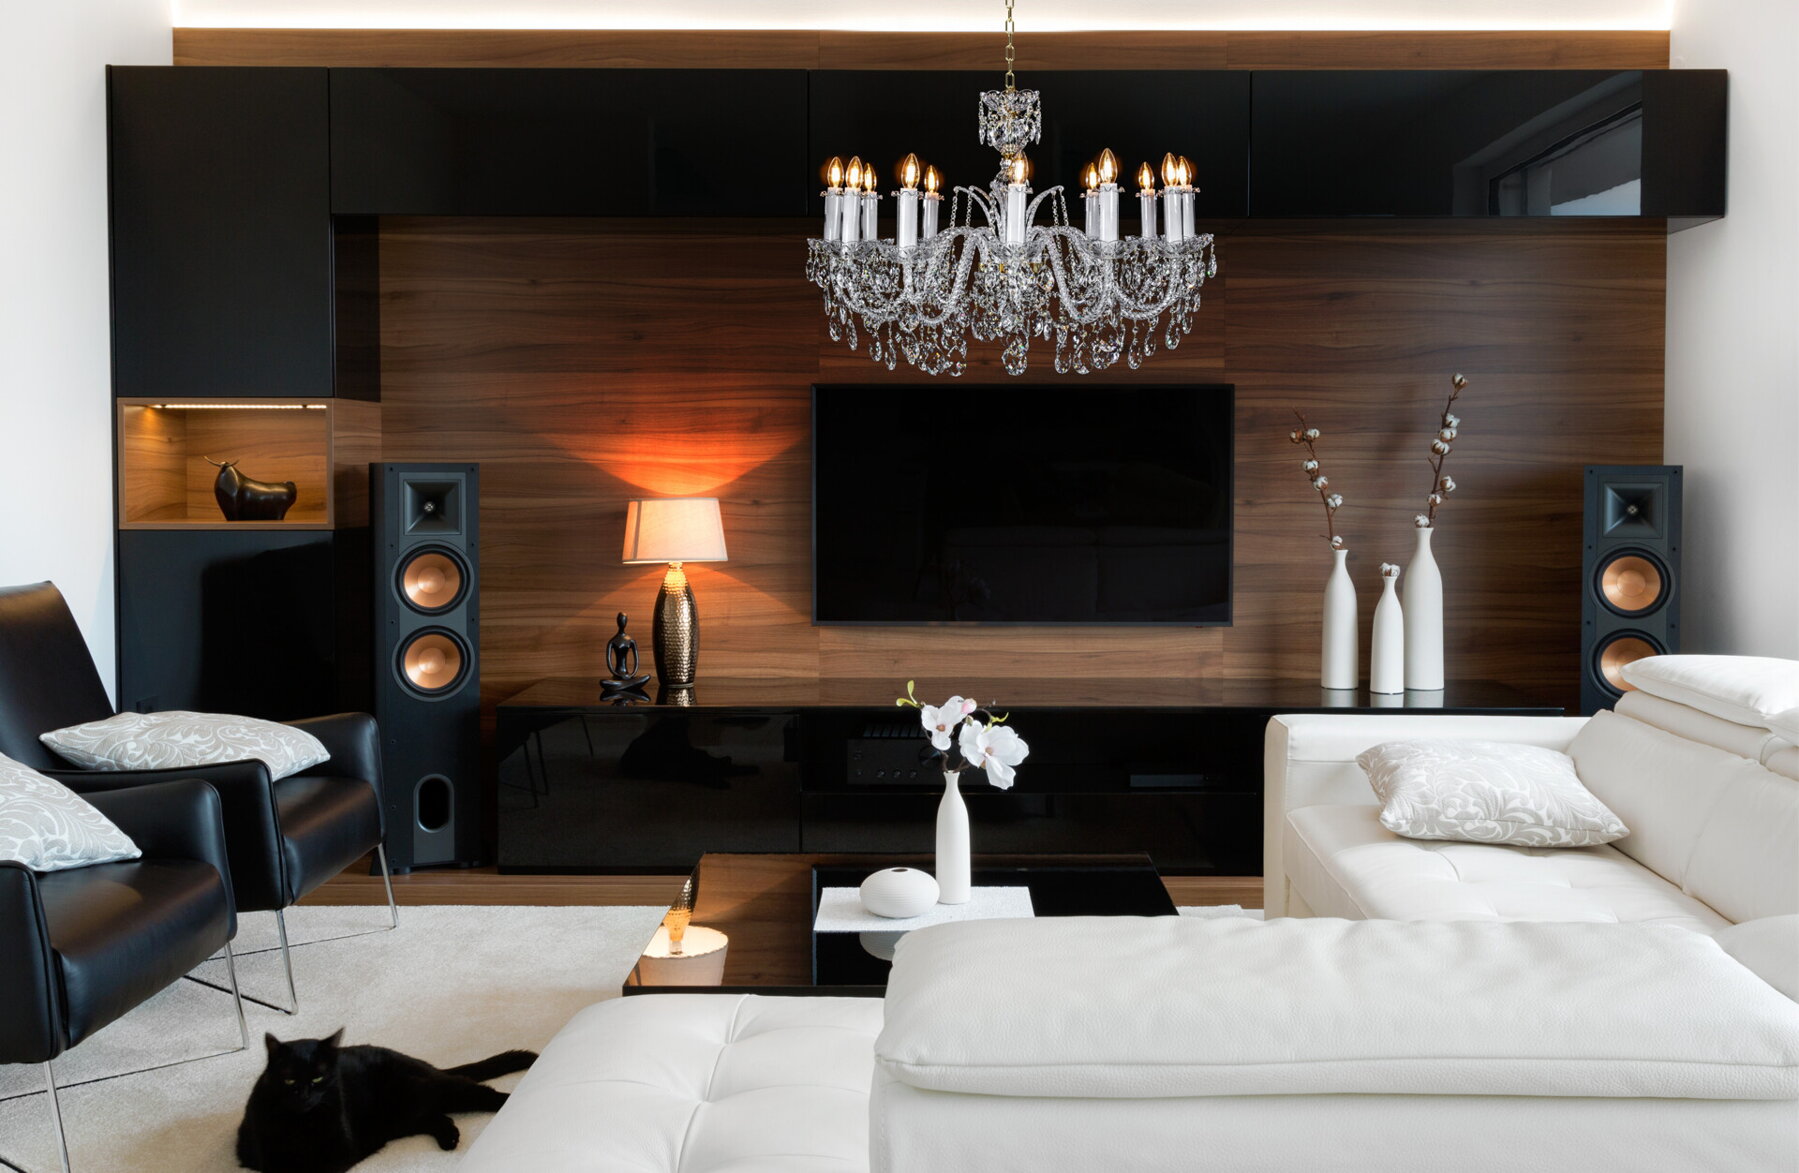 Living Room Crystal Chandelier in modern style EL1021201oLPB